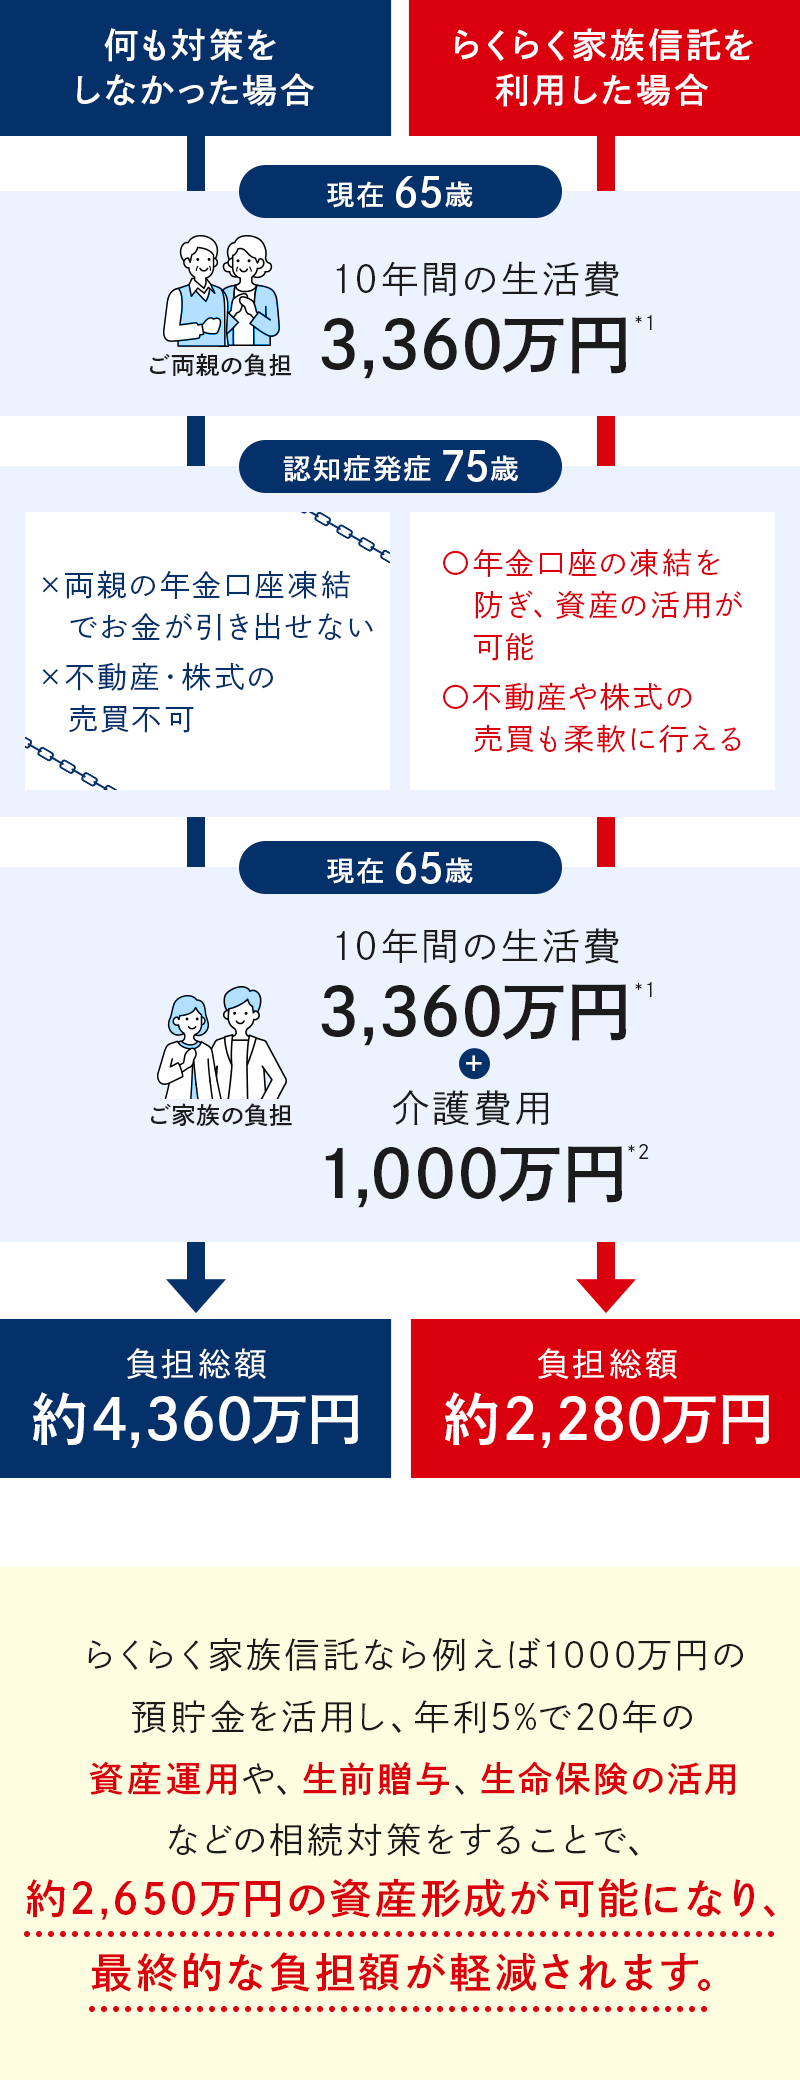 らくらく家族信託なら約2,650万円の資産形成が可能になり、最終的な負担額が軽減されます。